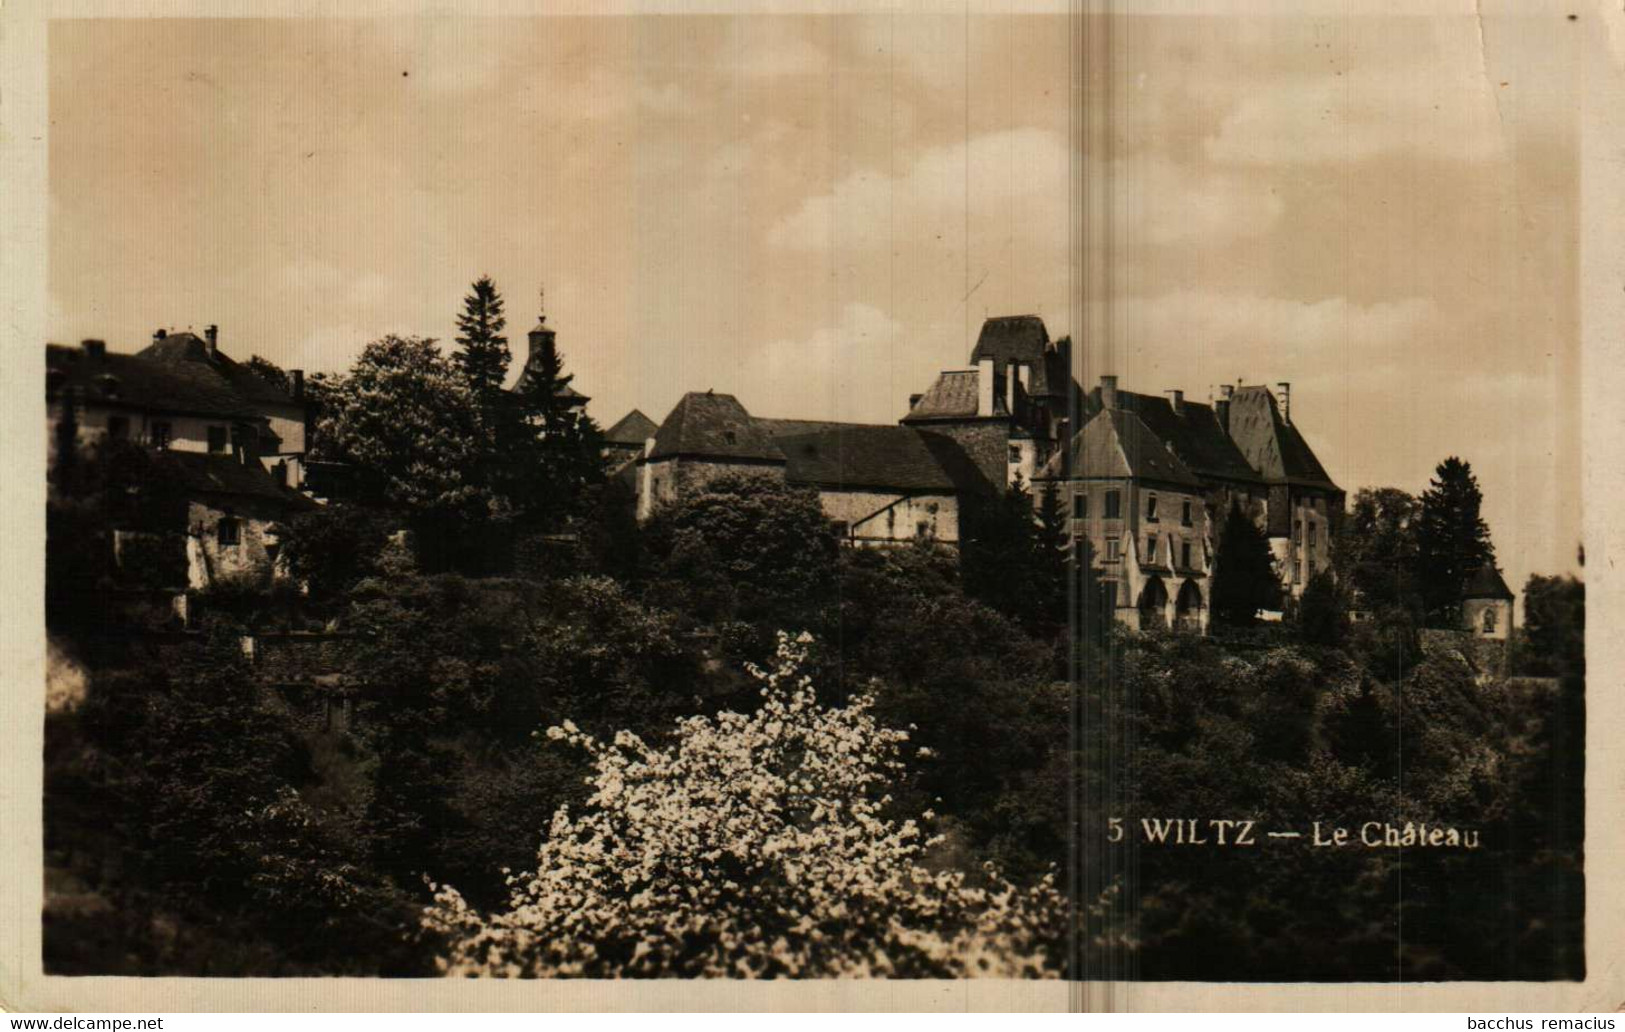 WILTZ  Le Chateau  Nr 5 - Wiltz